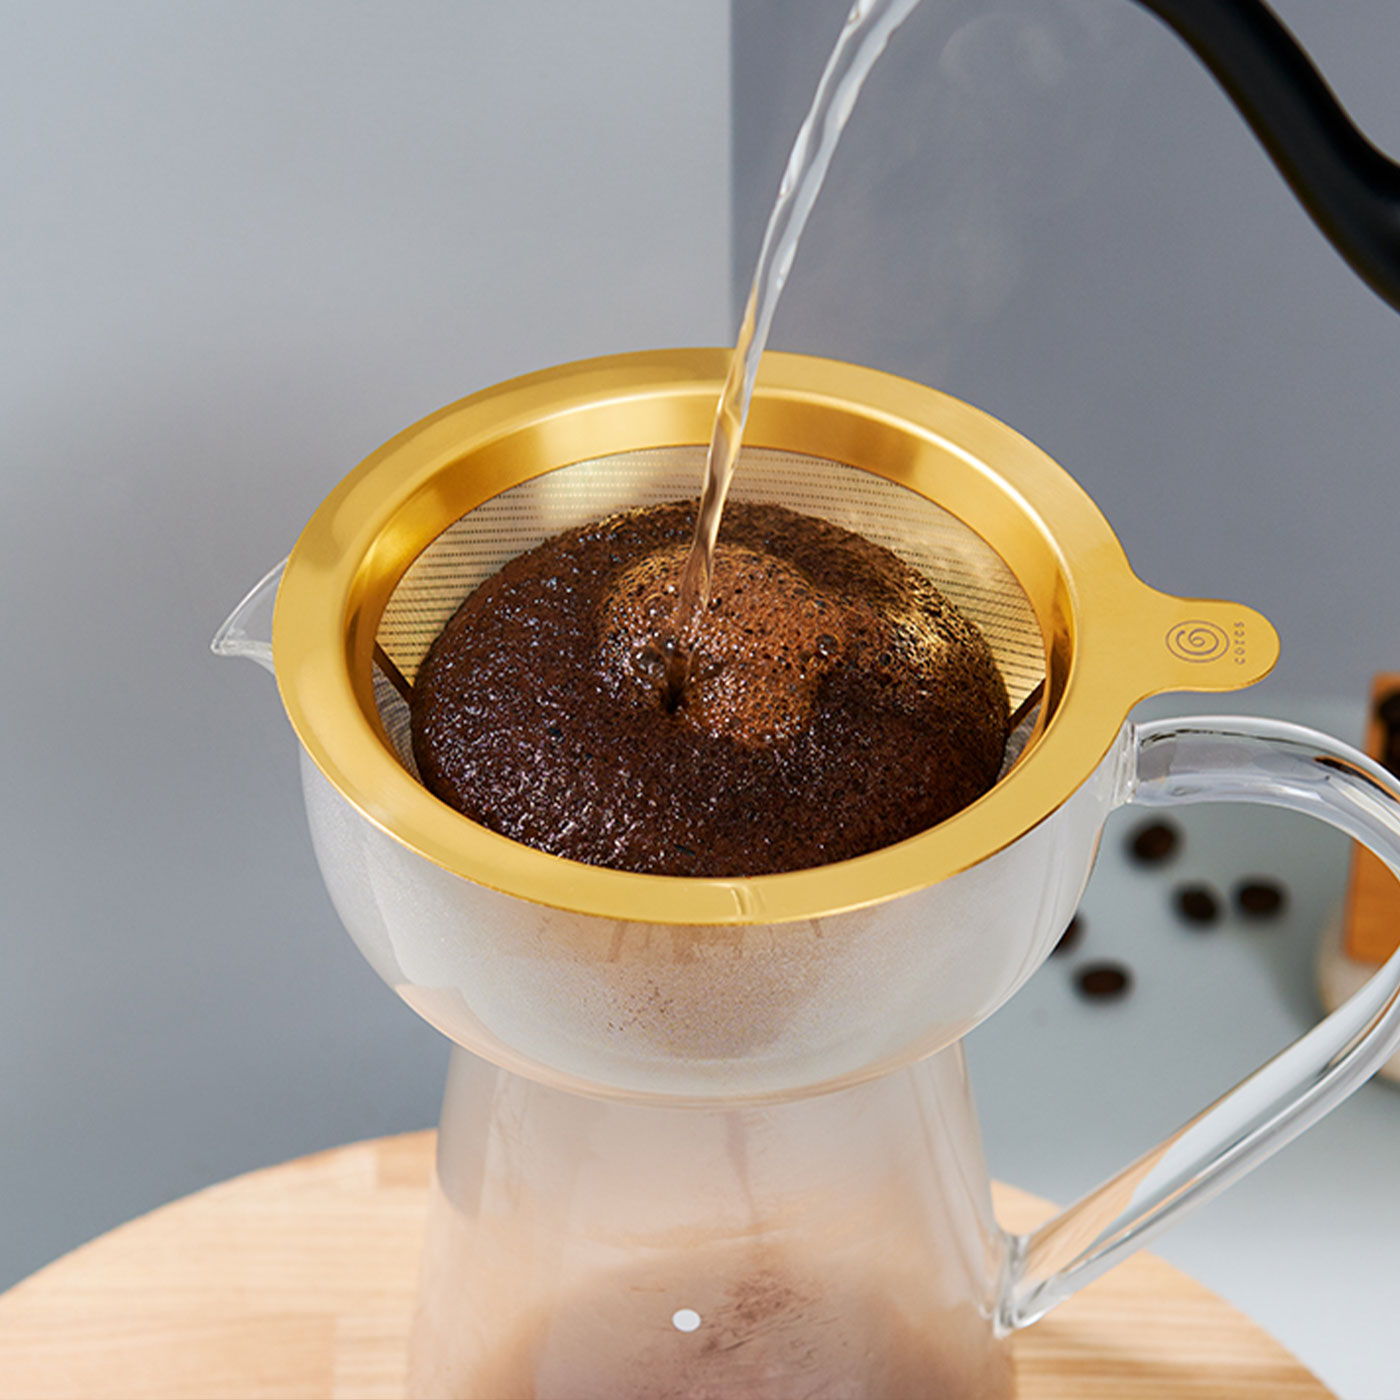 フェリシモの雑貨 Kraso|コーヒータイムを至福に 化学変化に強い純金コーティングのドリッパー付きサーバー|スペシャルティコーヒーのフルーティな特徴を存分に味わうための、短時間抽出に最適なフィルターです